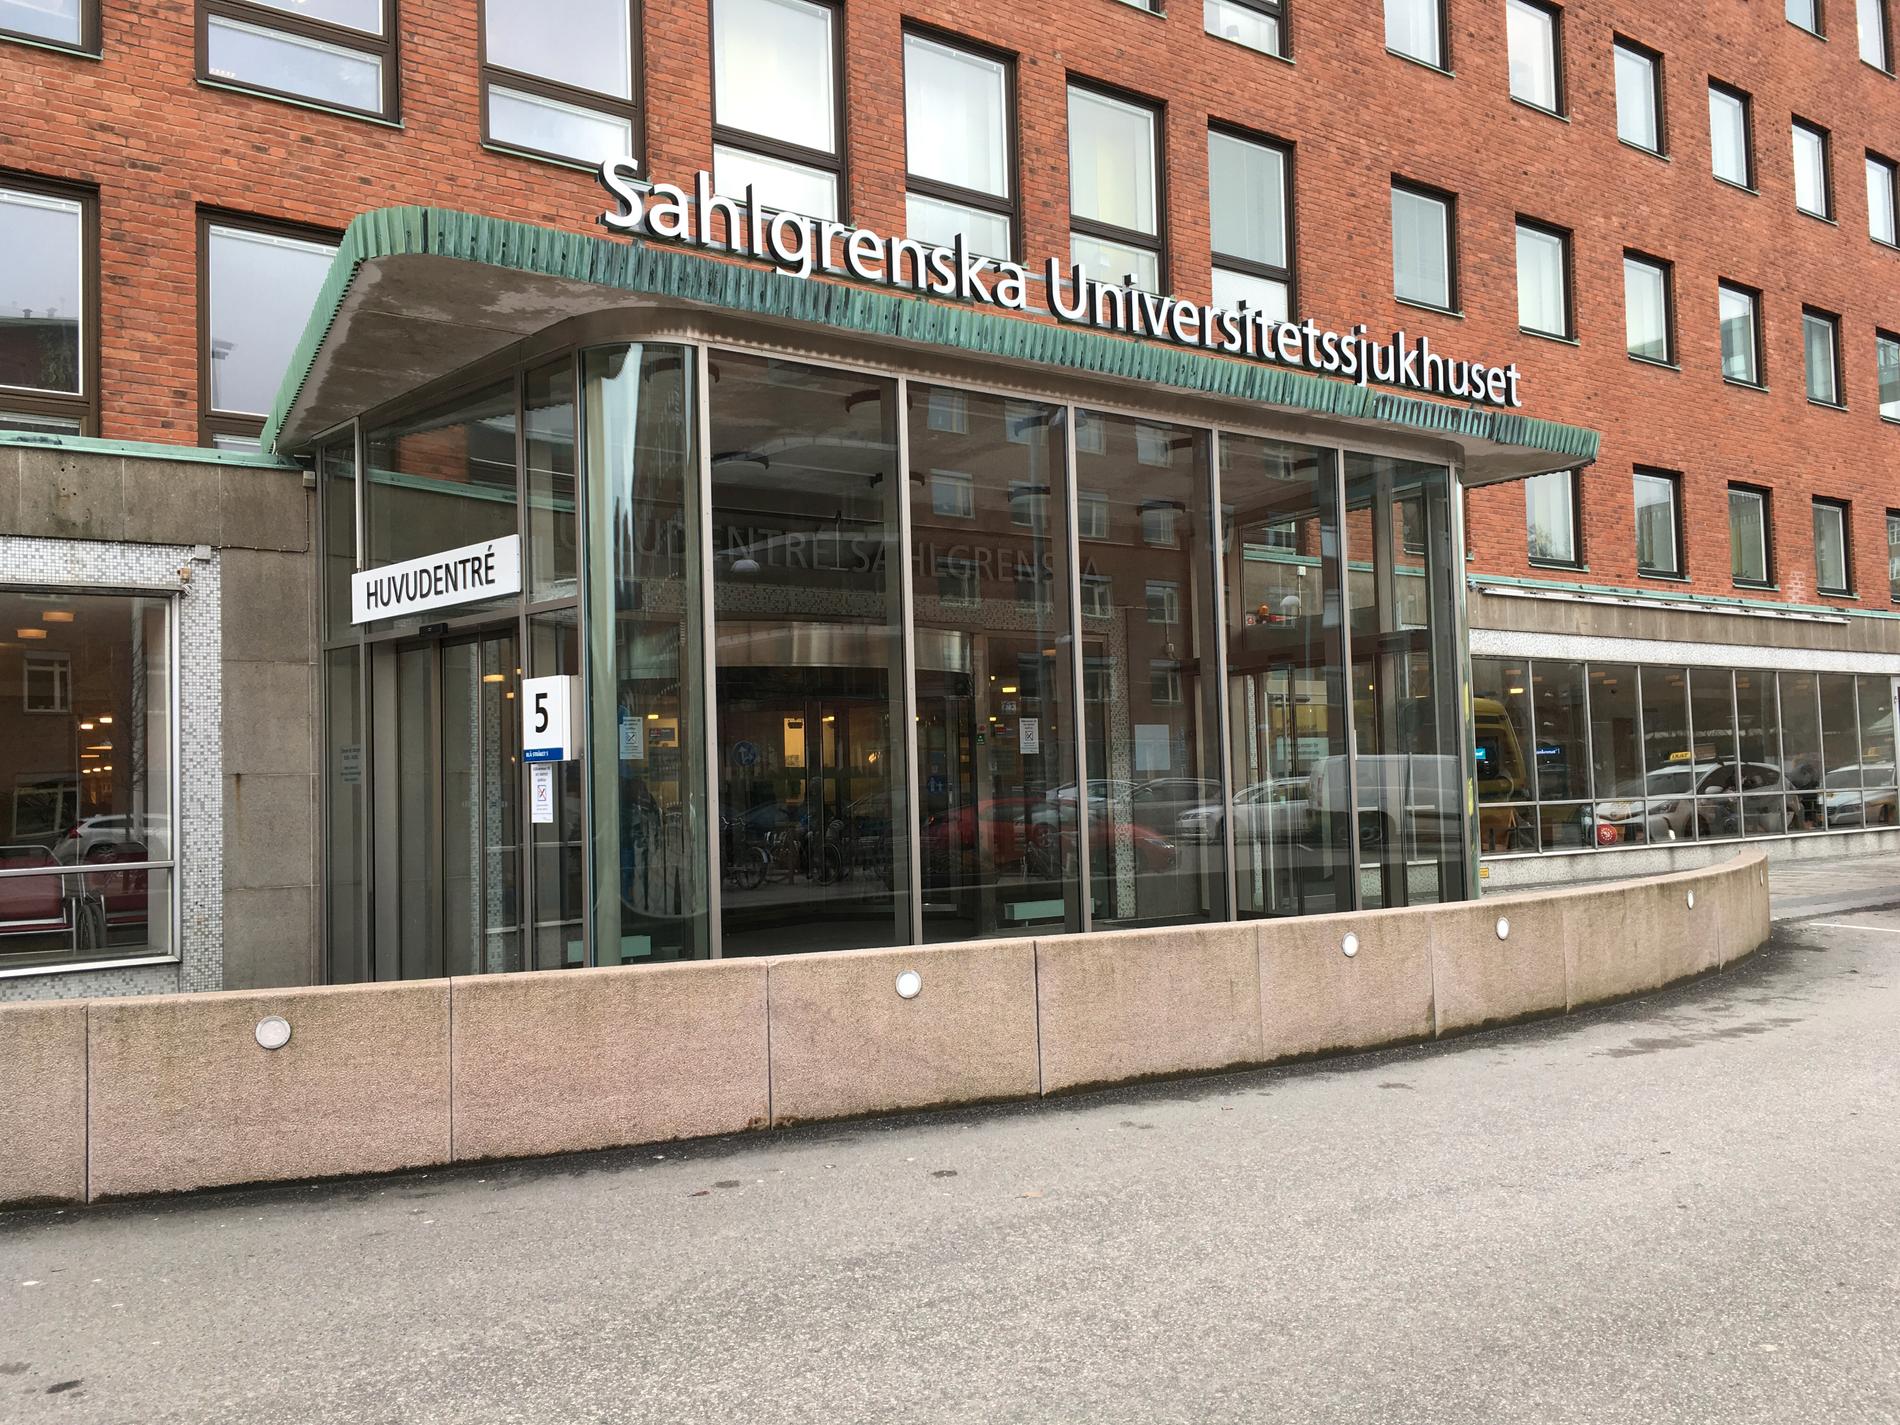 En sjuksköterska vid Sahlgrenska universitetssjukhuset i Göteborg arbetade i två år utan utbildning. Arkivbild.